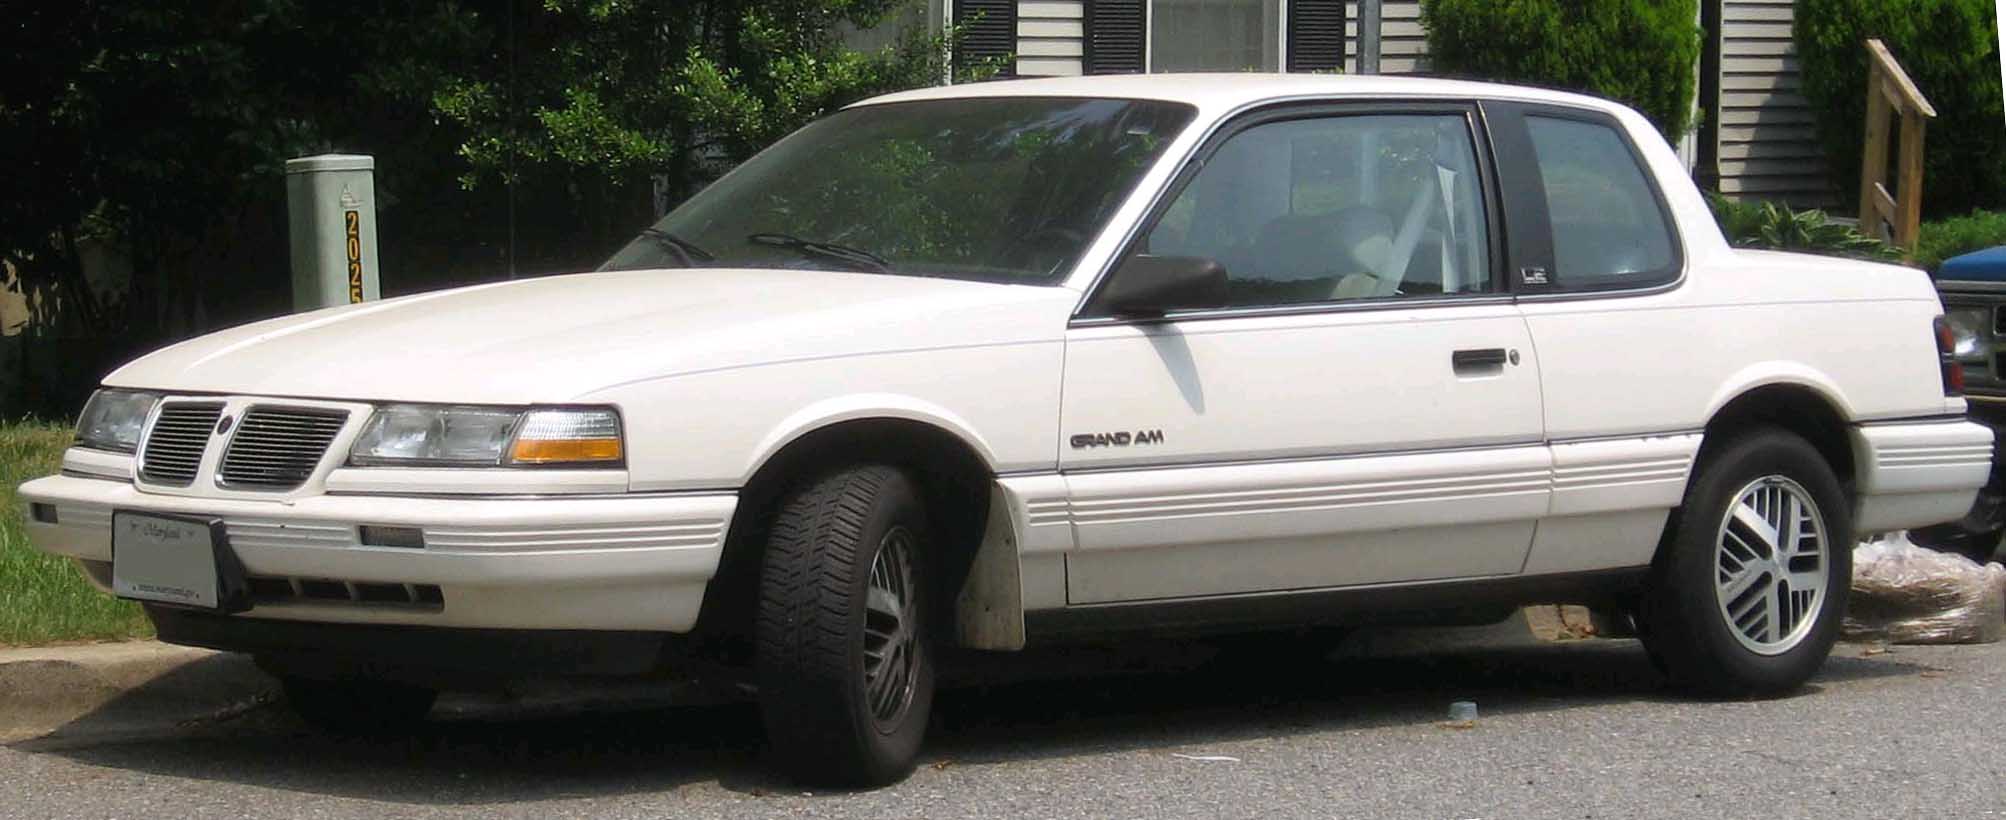 Pontiac Grand Am 1991 #3